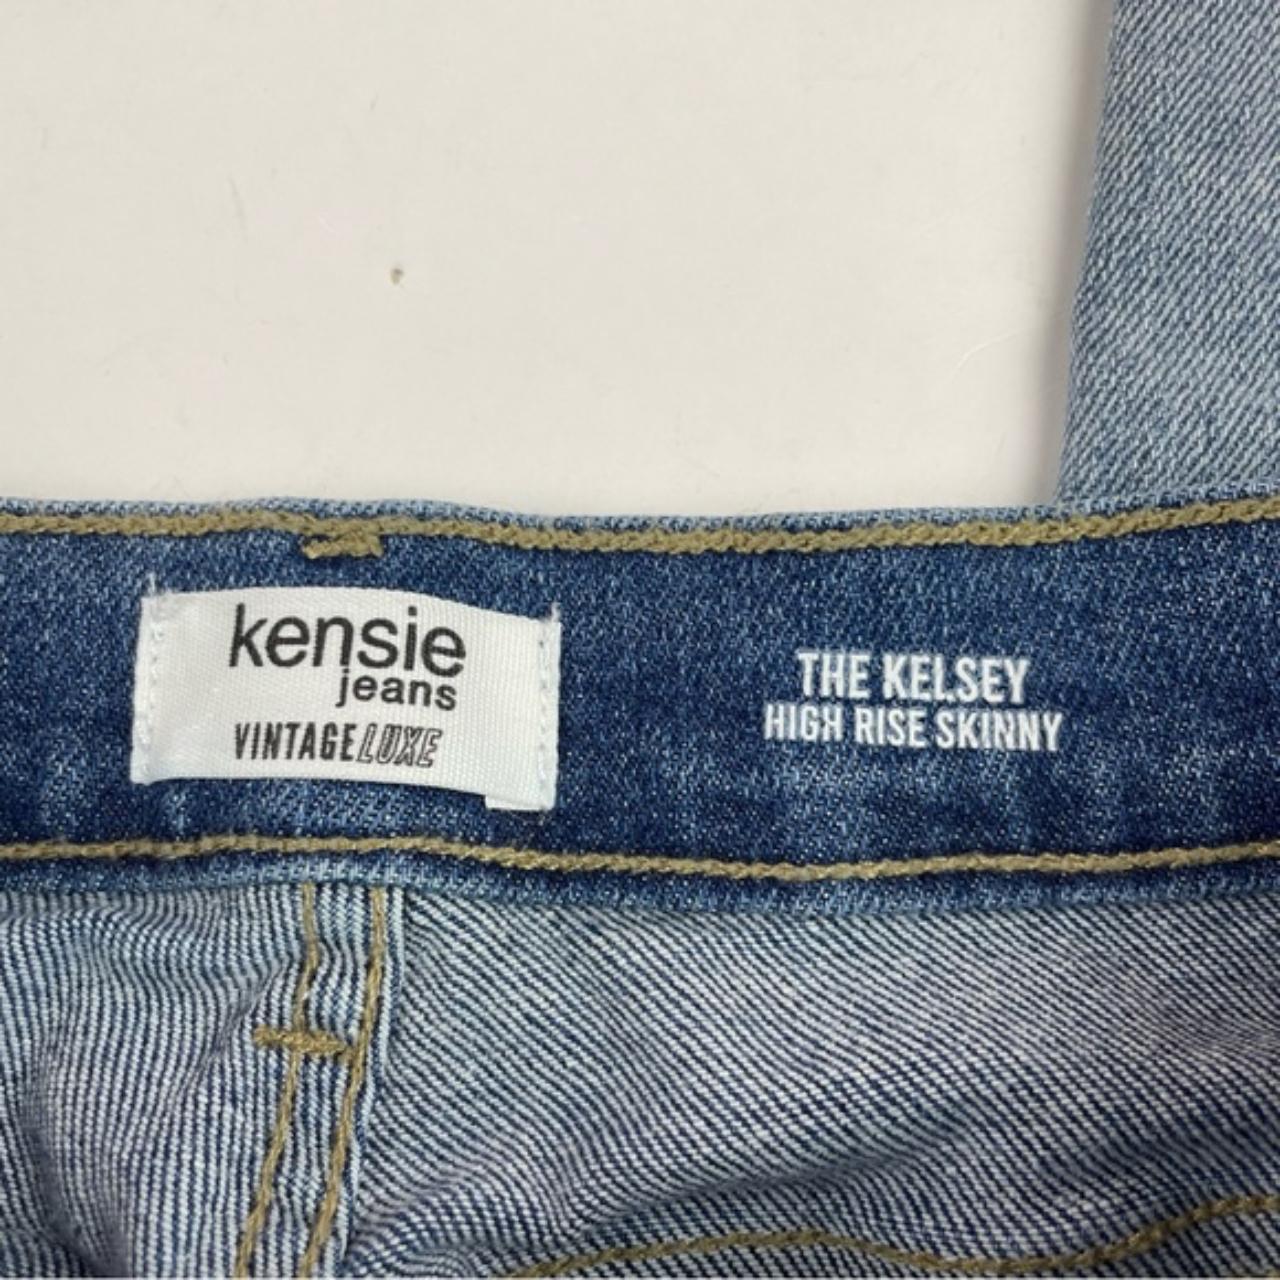 Kensie Jeans Kelsey High Rise Skinny Blue Denim - Depop